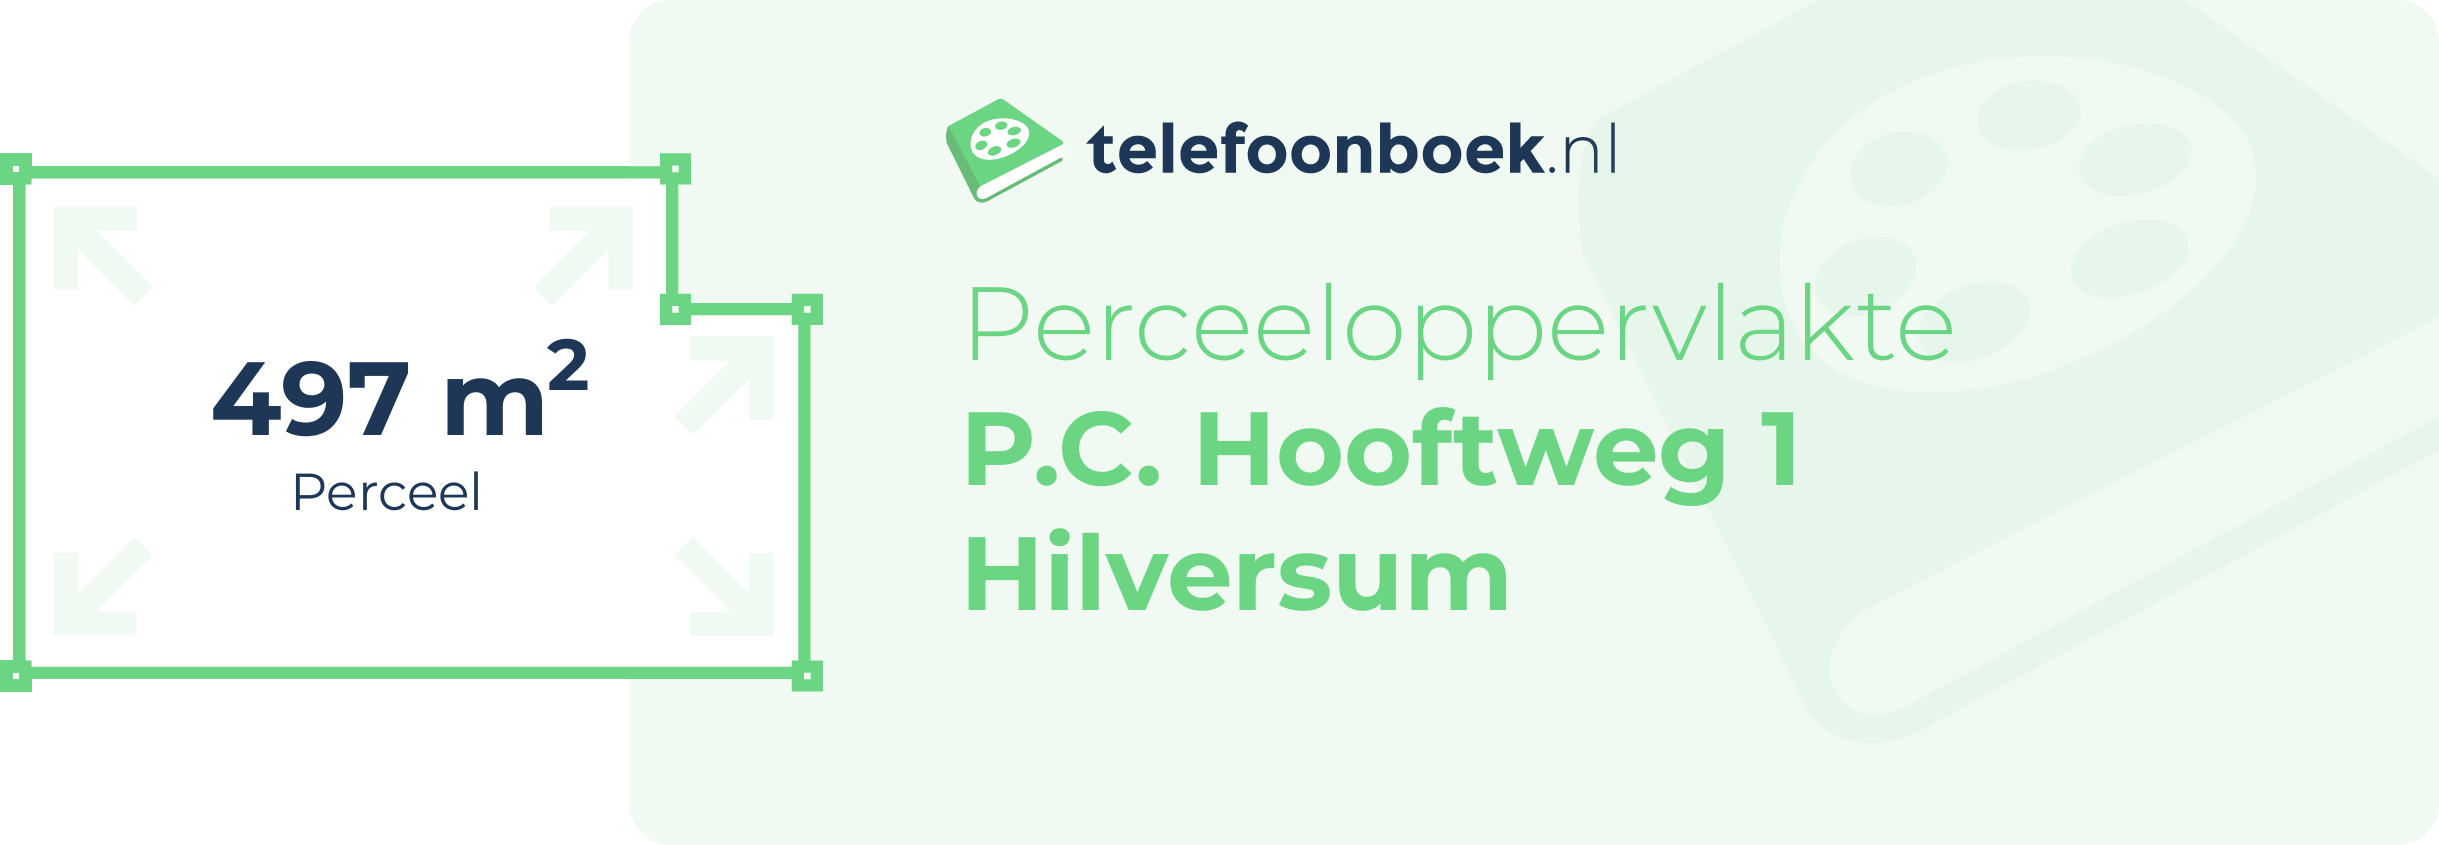 Perceeloppervlakte P.C. Hooftweg 1 Hilversum